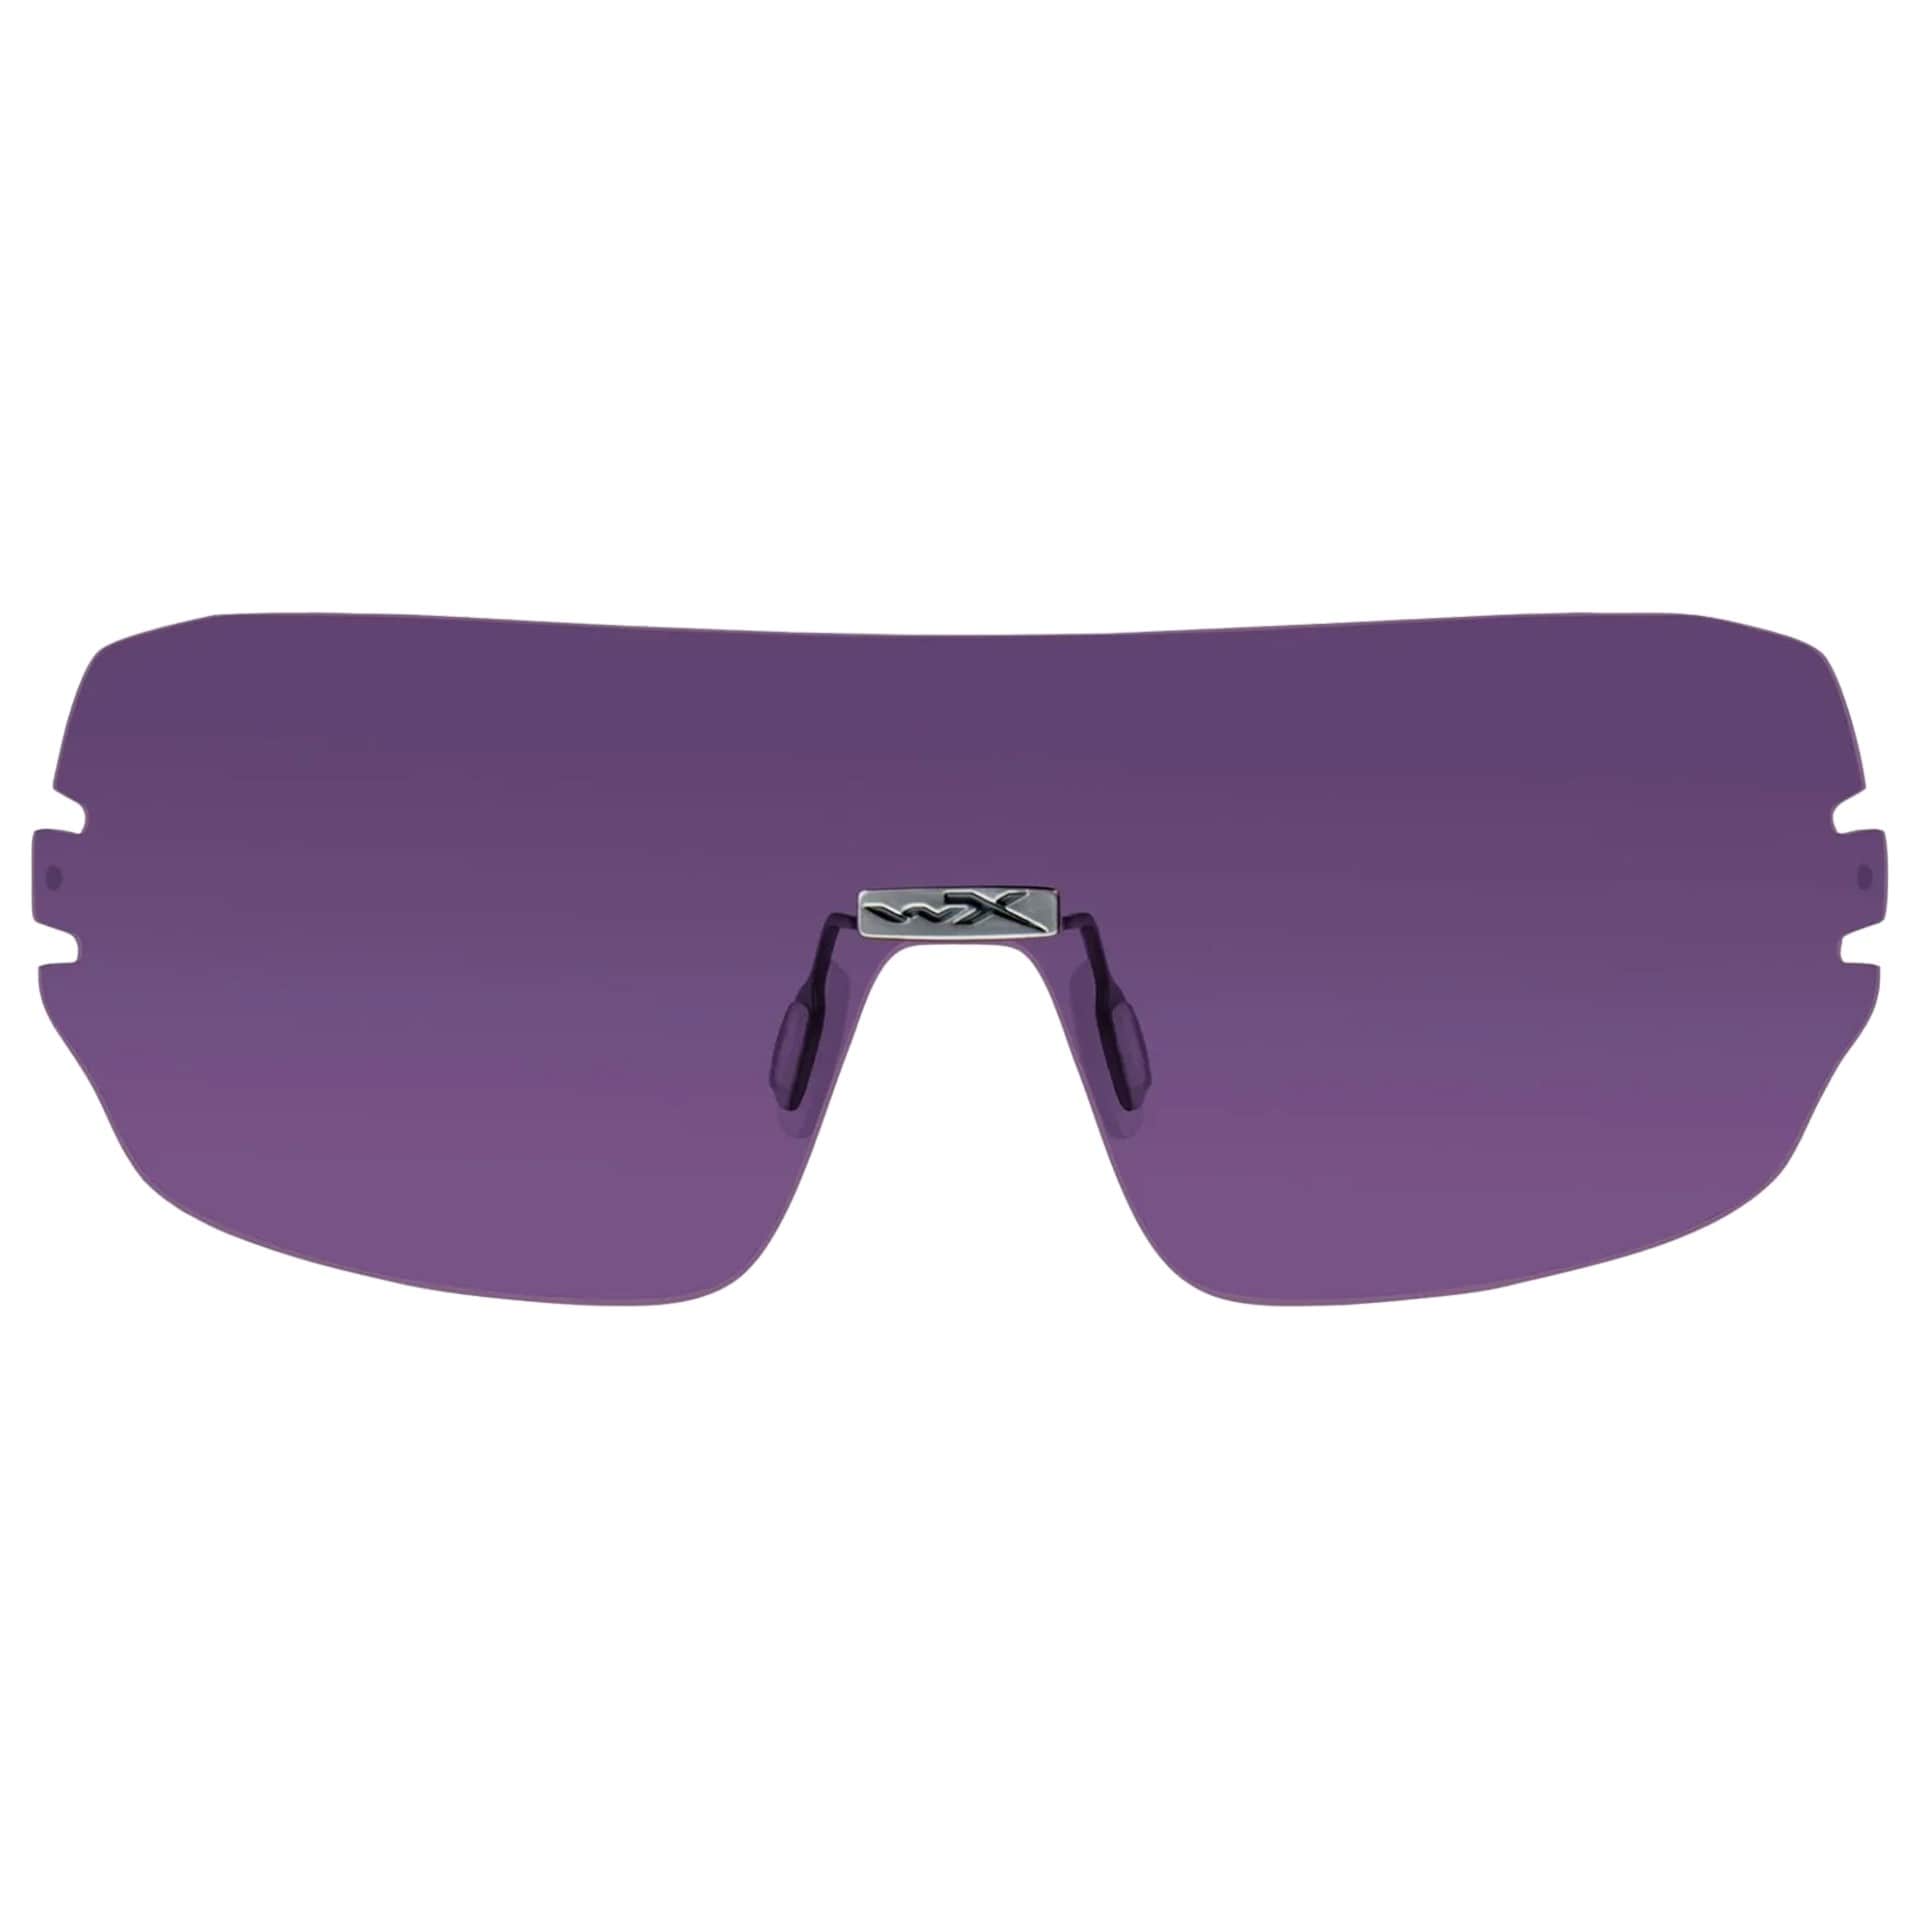 Wizjer Wiley X Detection - Purple